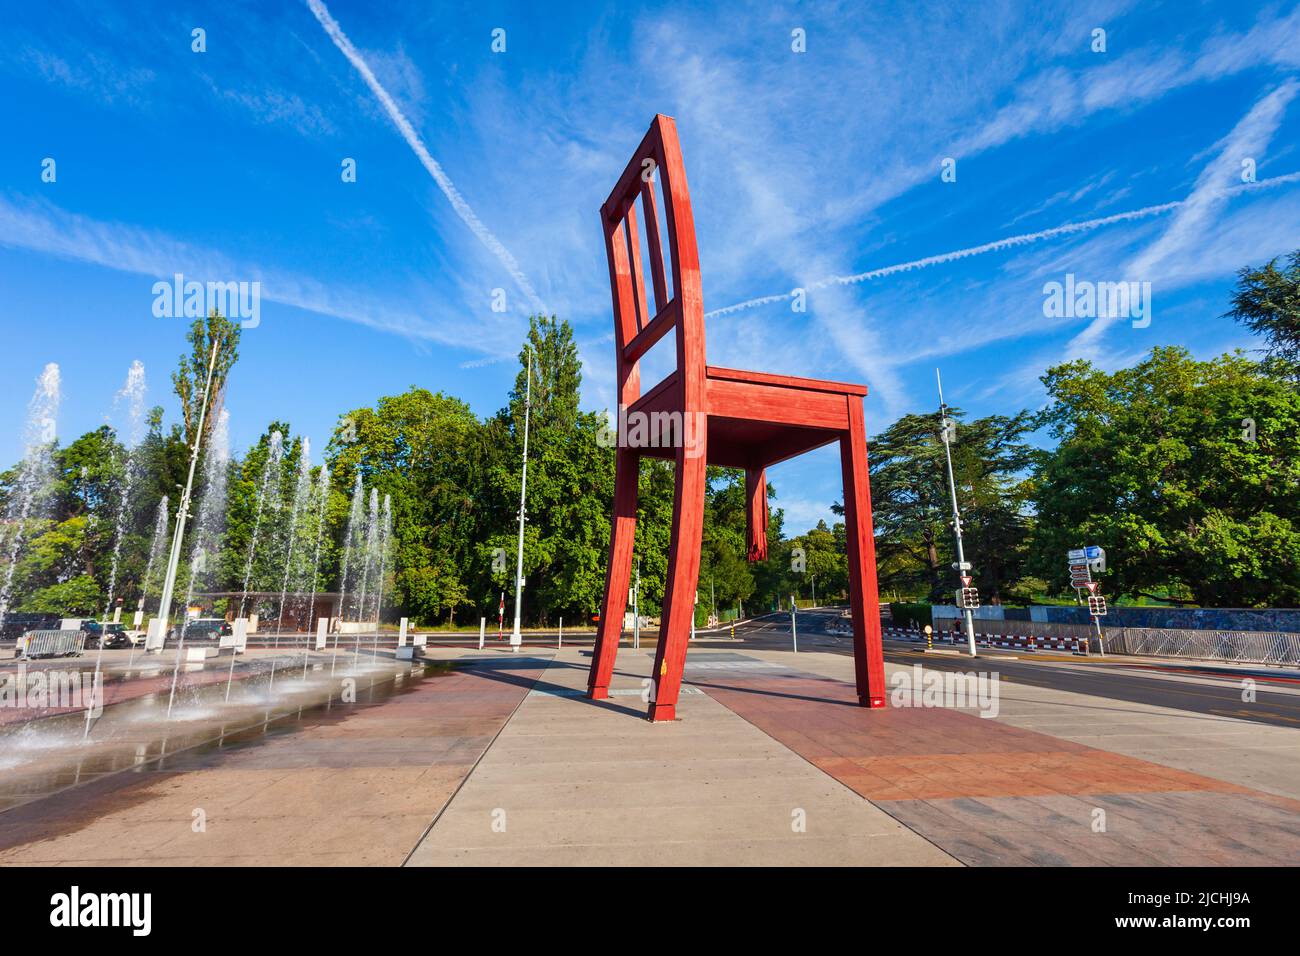 Genève, SUISSE - Le 20 juillet 2019 : Rupture de la chaise ou chaise Cassee est une sculpture en bois par l'artiste suisse Daniel Berset et Louis Geneve à Genève Banque D'Images